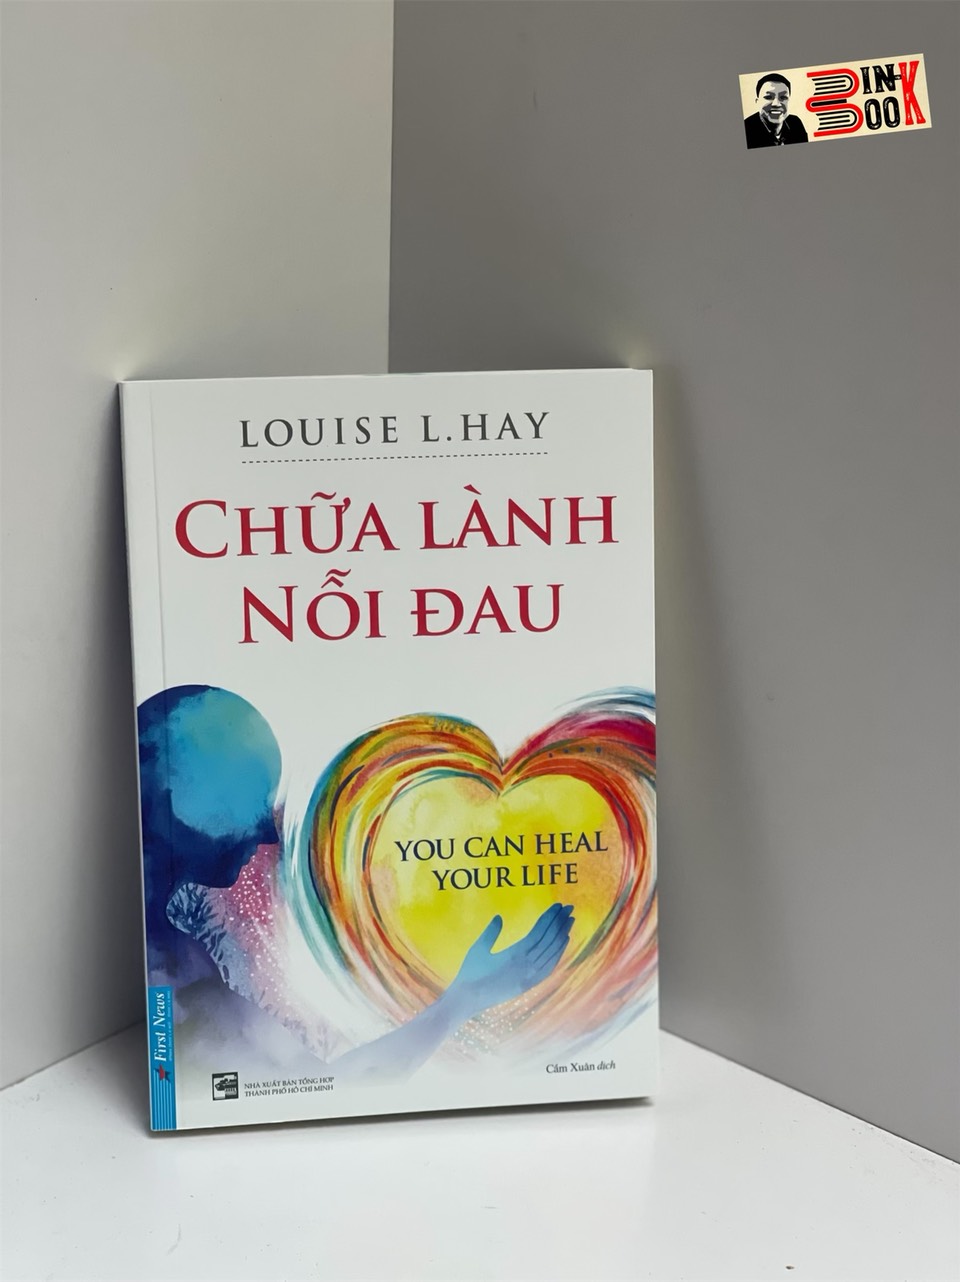 CHỮA LÀNH NỖI ĐAU - Louise L. Hay - Cẩm Xuân dịch - First News -  NXB Tổng Hợp Thành Phố Hồ Chí Minh